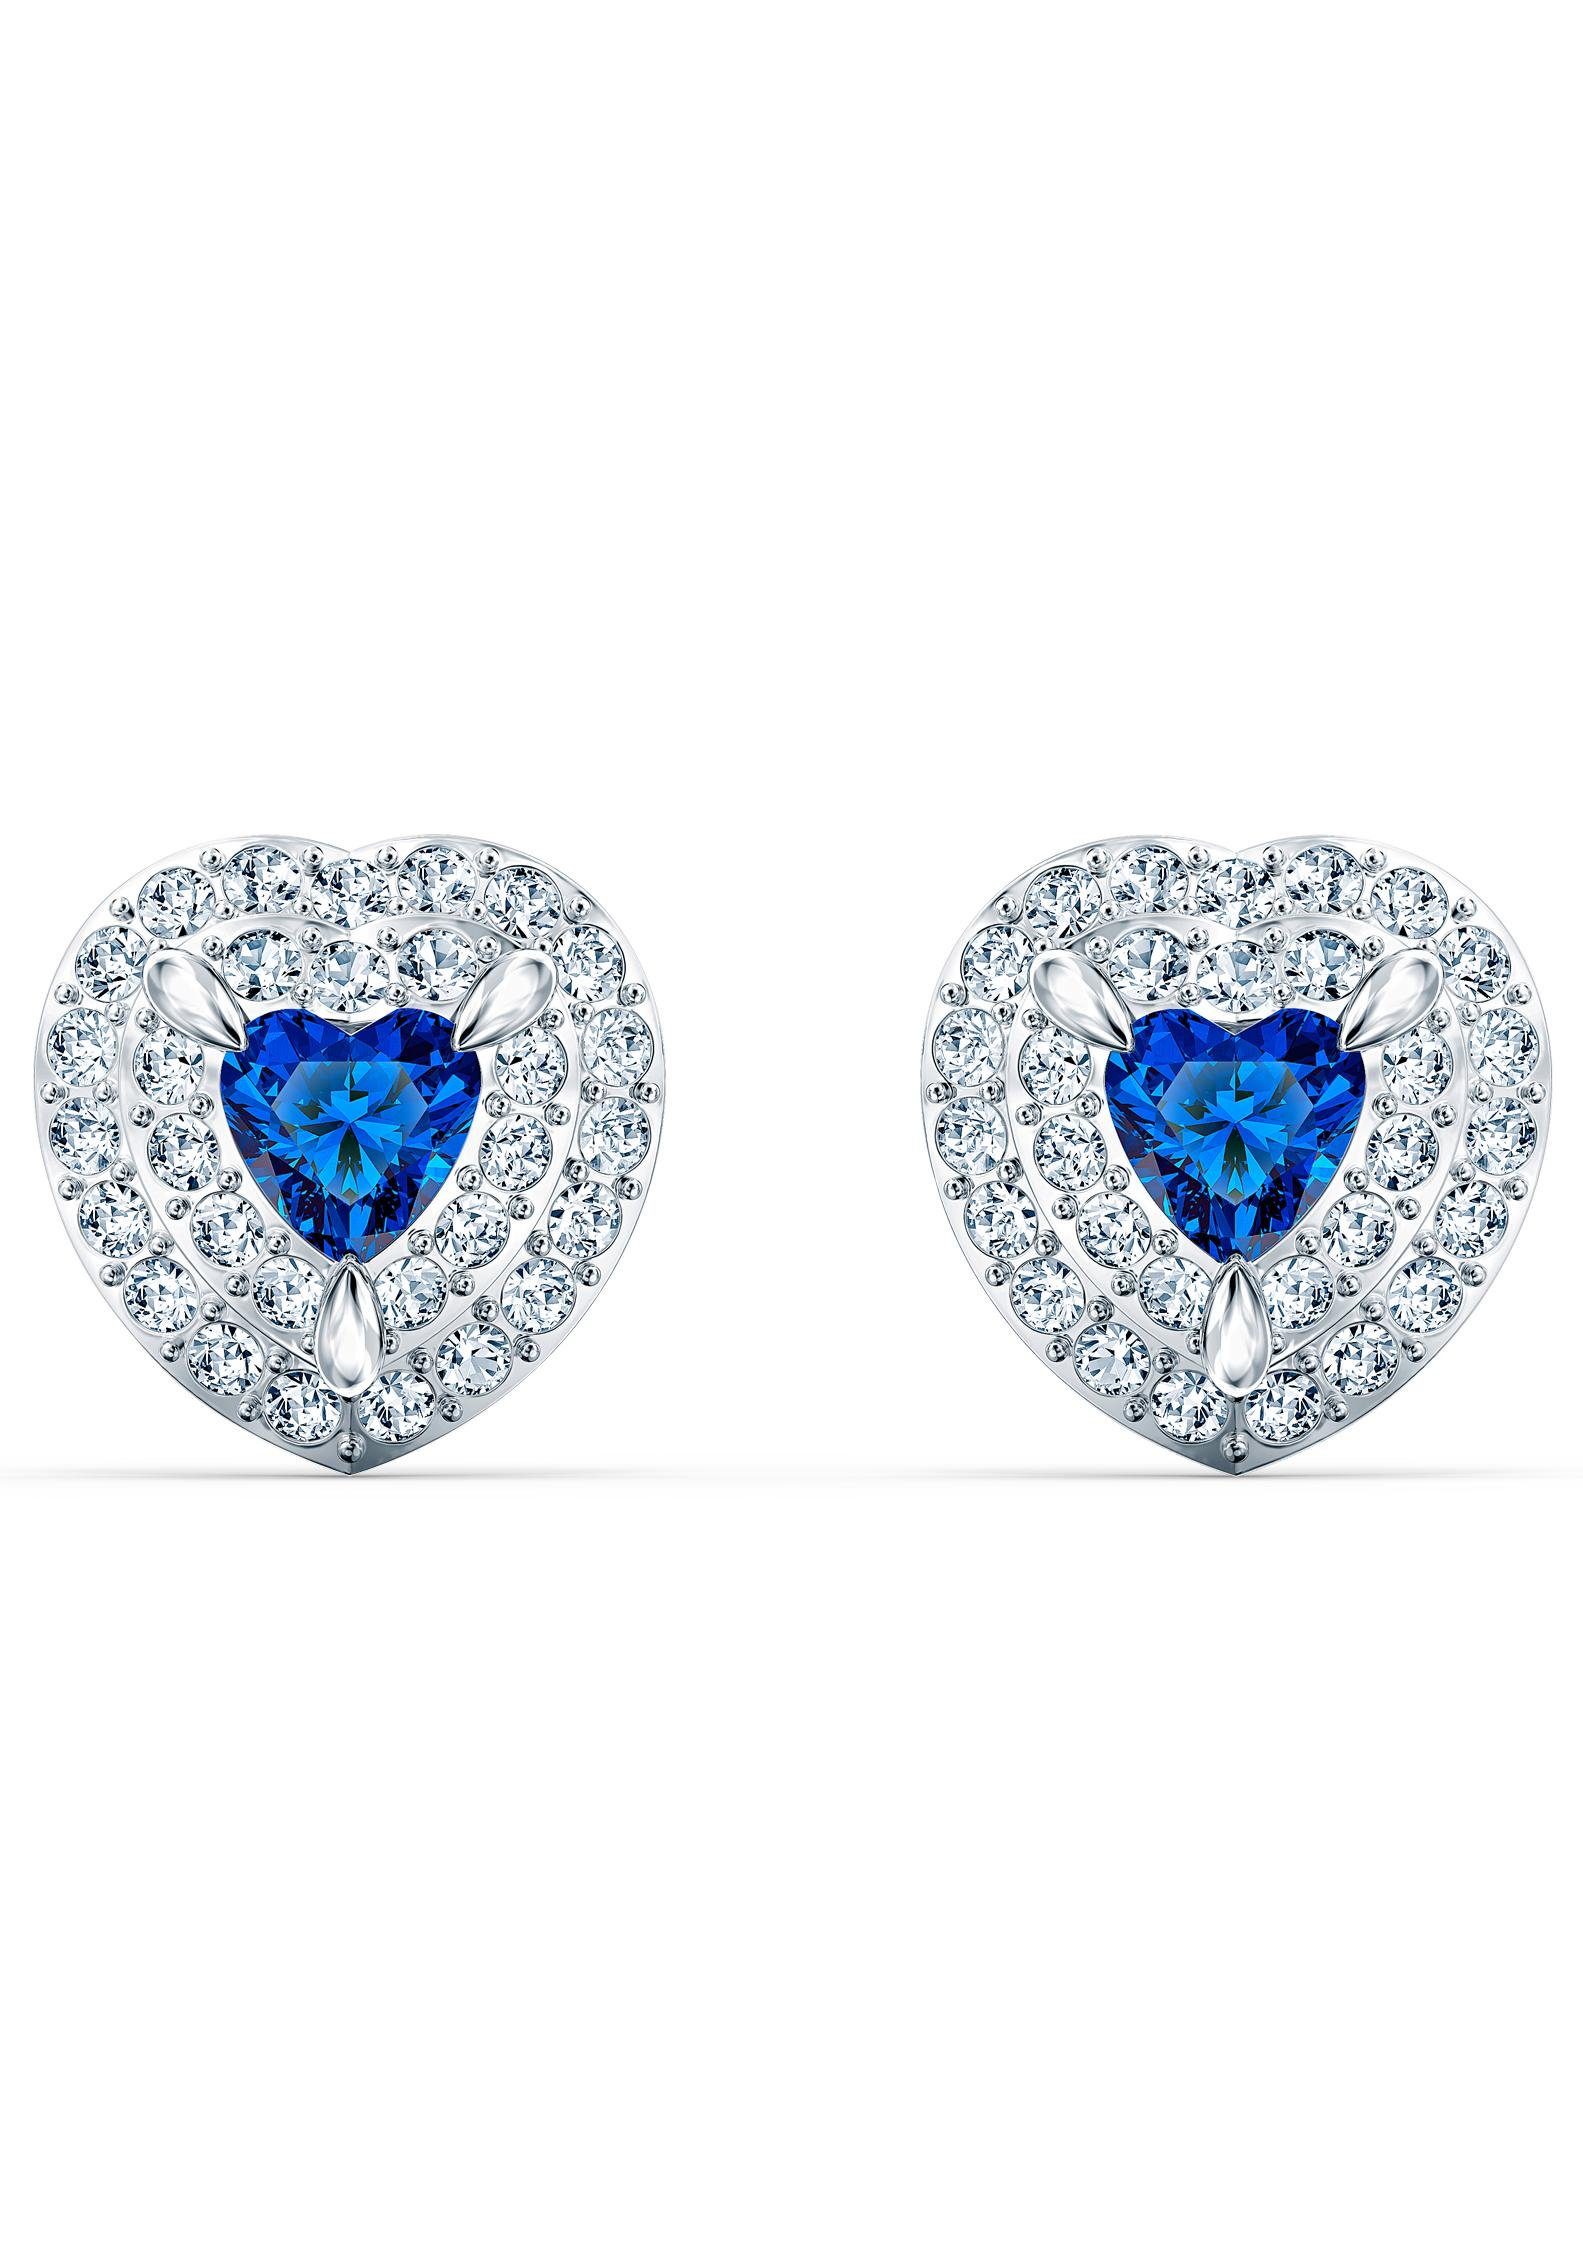 Swarovski Paar Ohrstecker »Herzen, One, blau, rhodiniert, 5511685«, mit  Swarovski® Kristallen online kaufen | OTTO